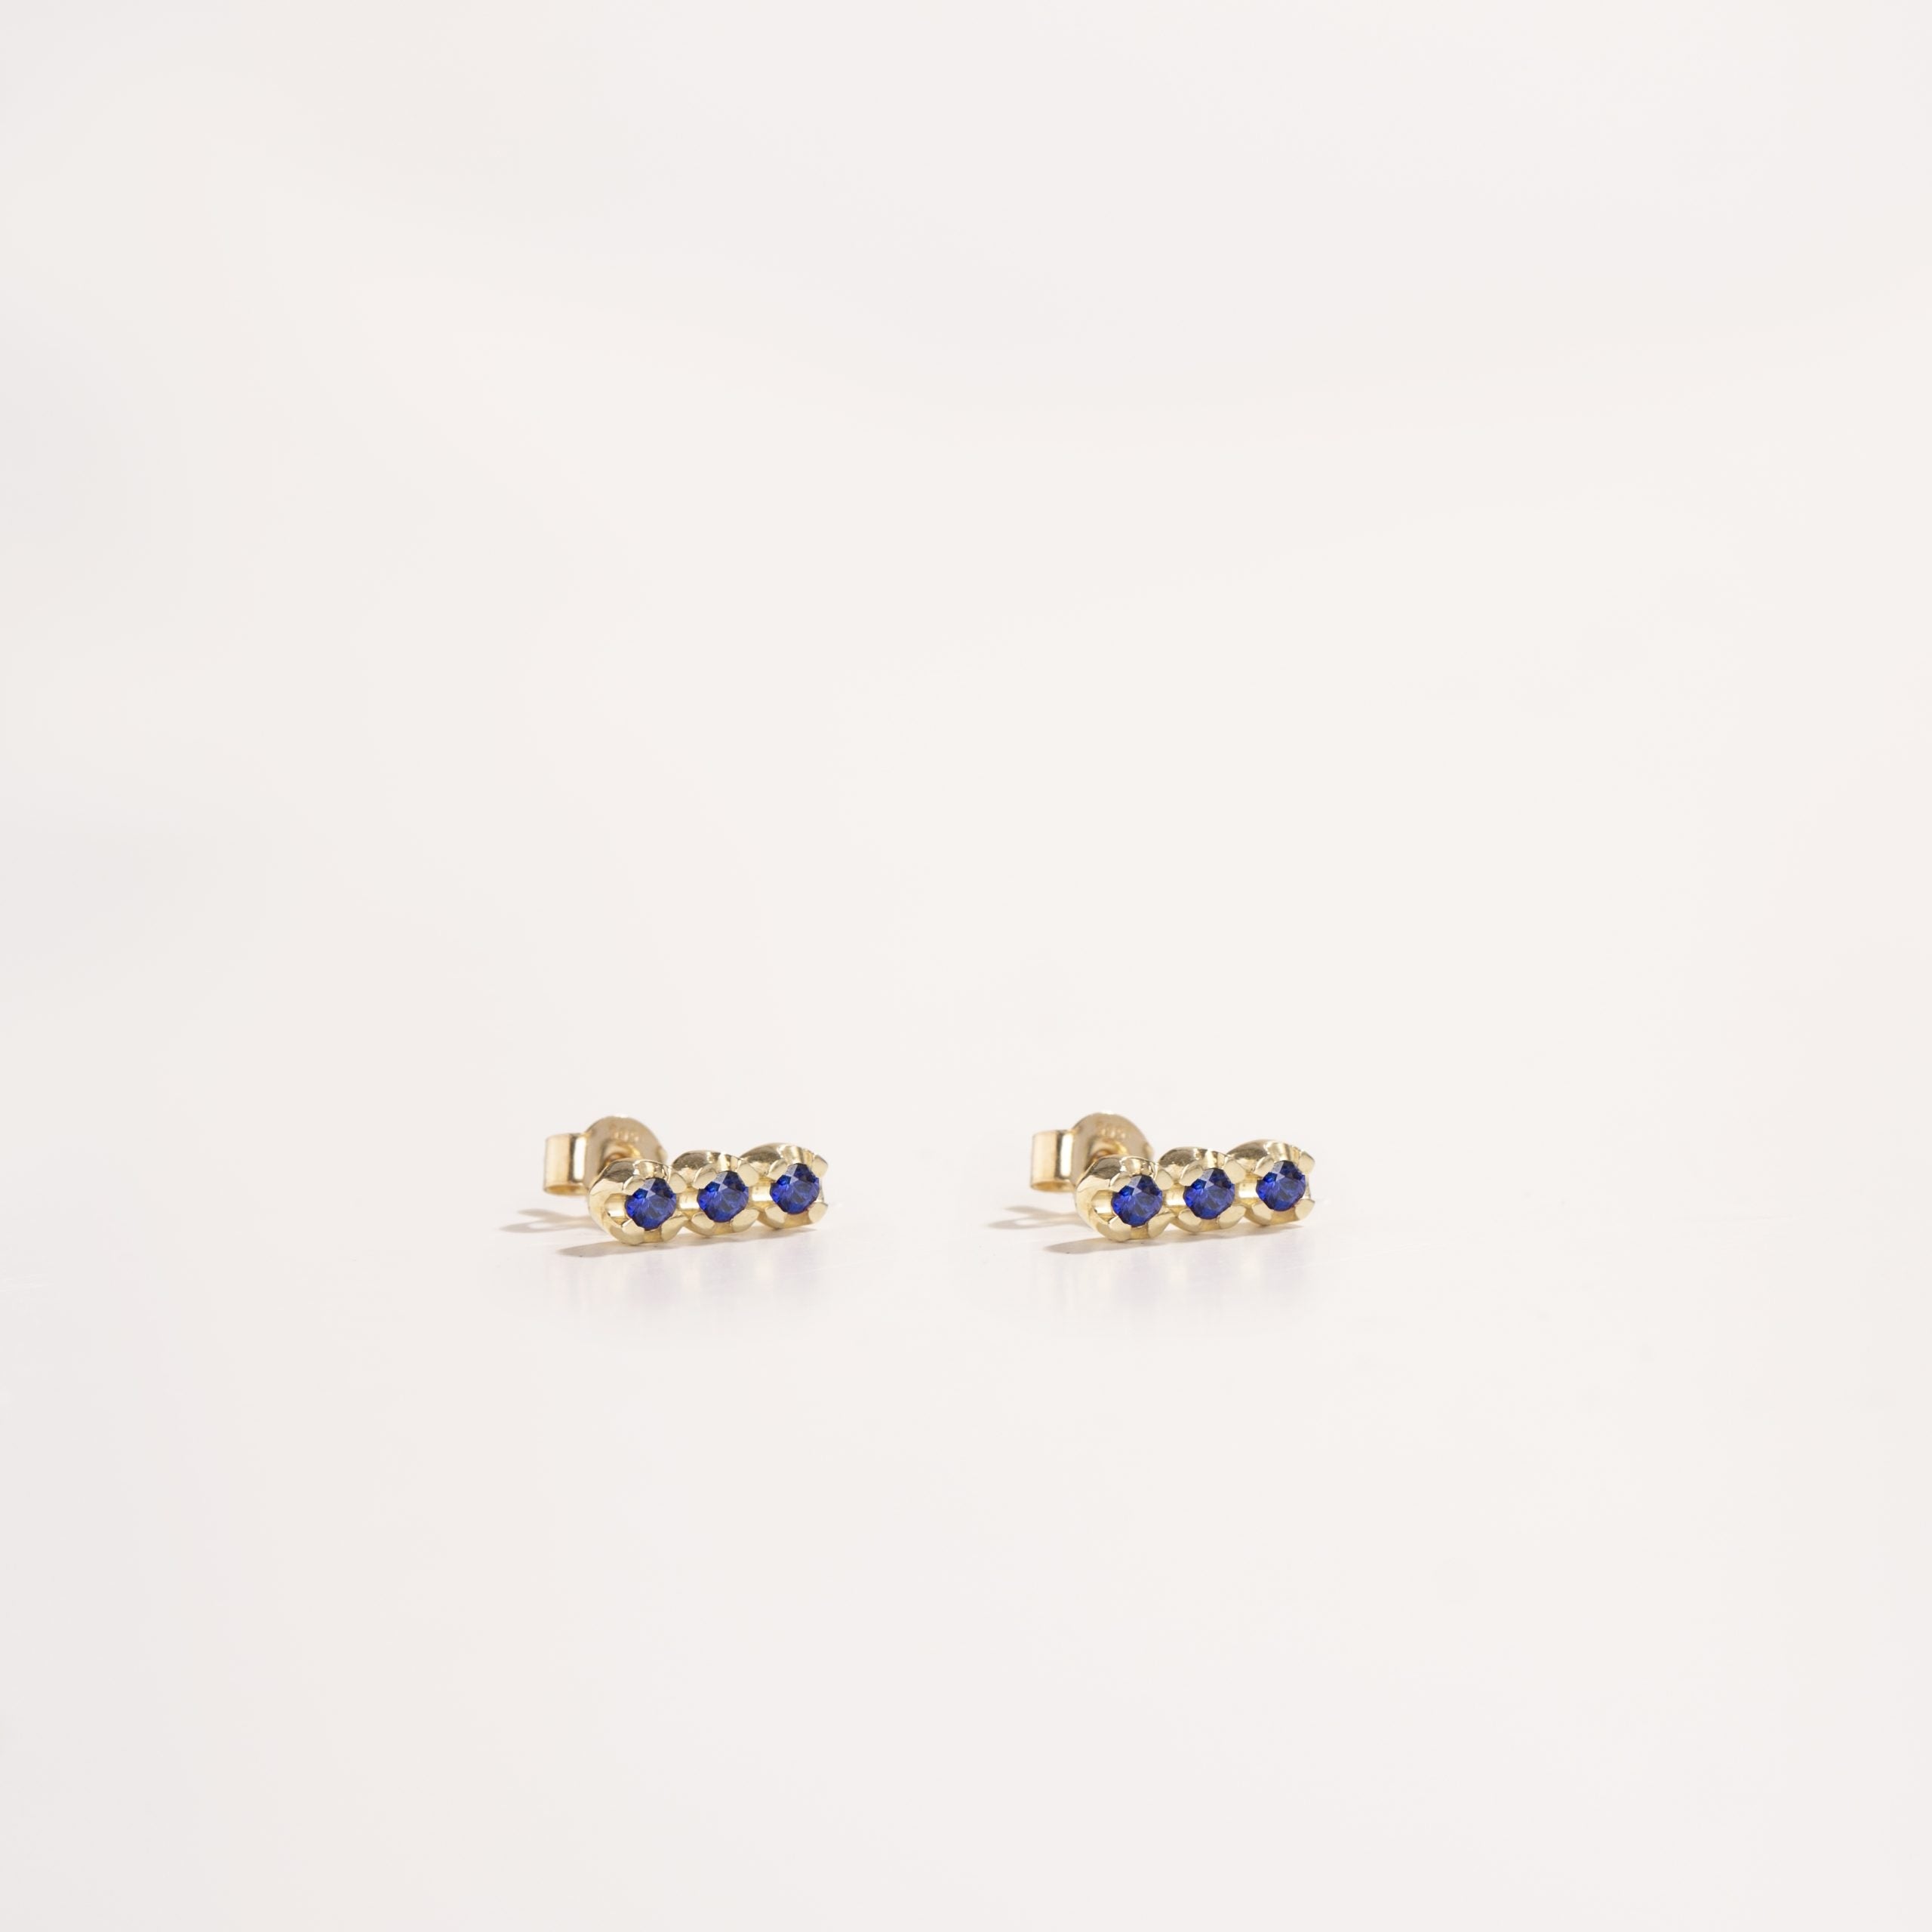 3 Blue Sapphire Stud Earrings 14K Gold